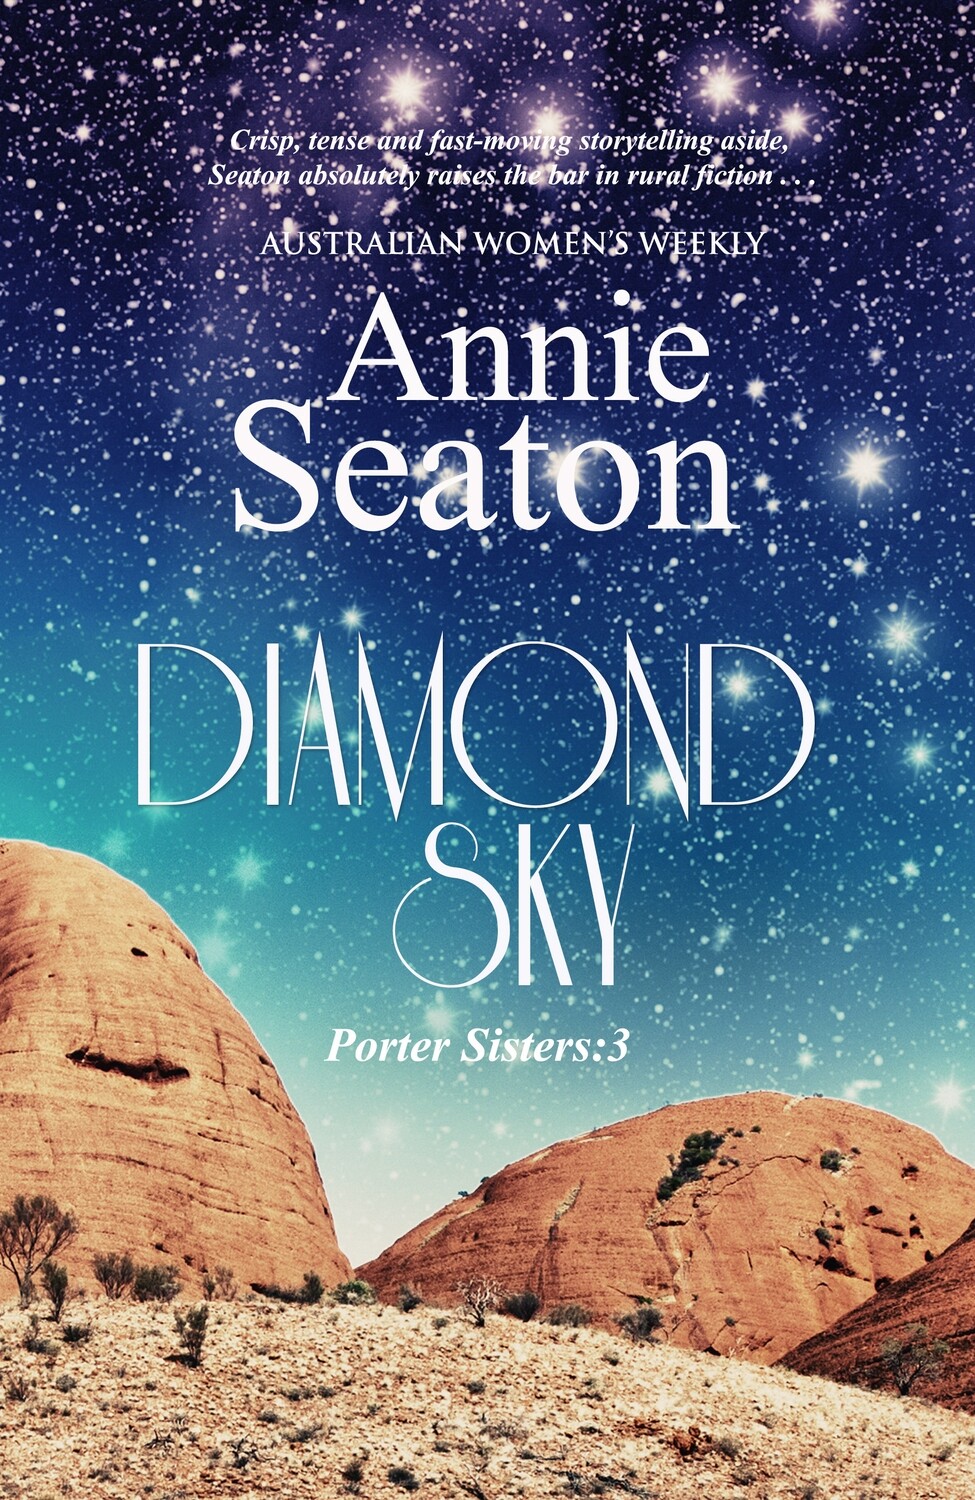 Diamond Sky (Porters Sisters 3)